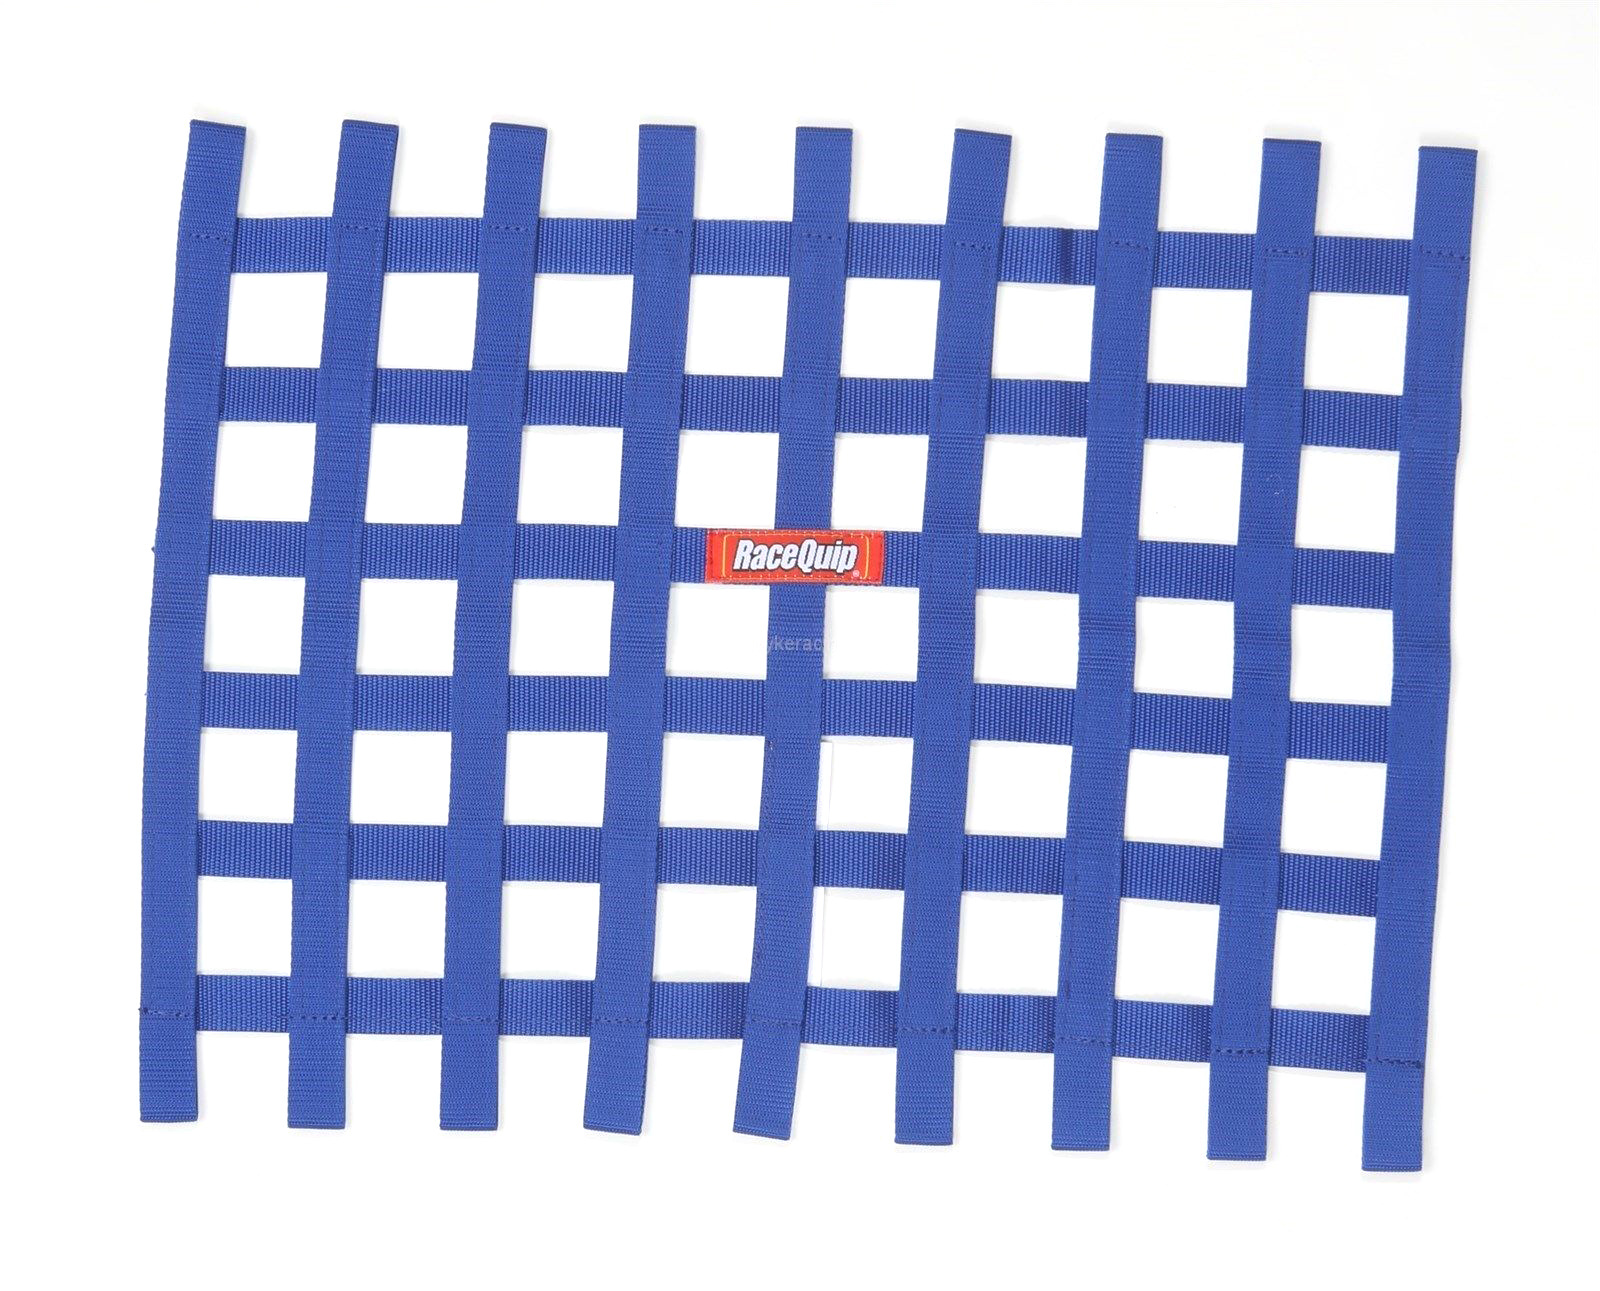 Racequip 721025 - Window Net, 1 in Webbing, 18 x 24 in Rectangle, Blue, Each